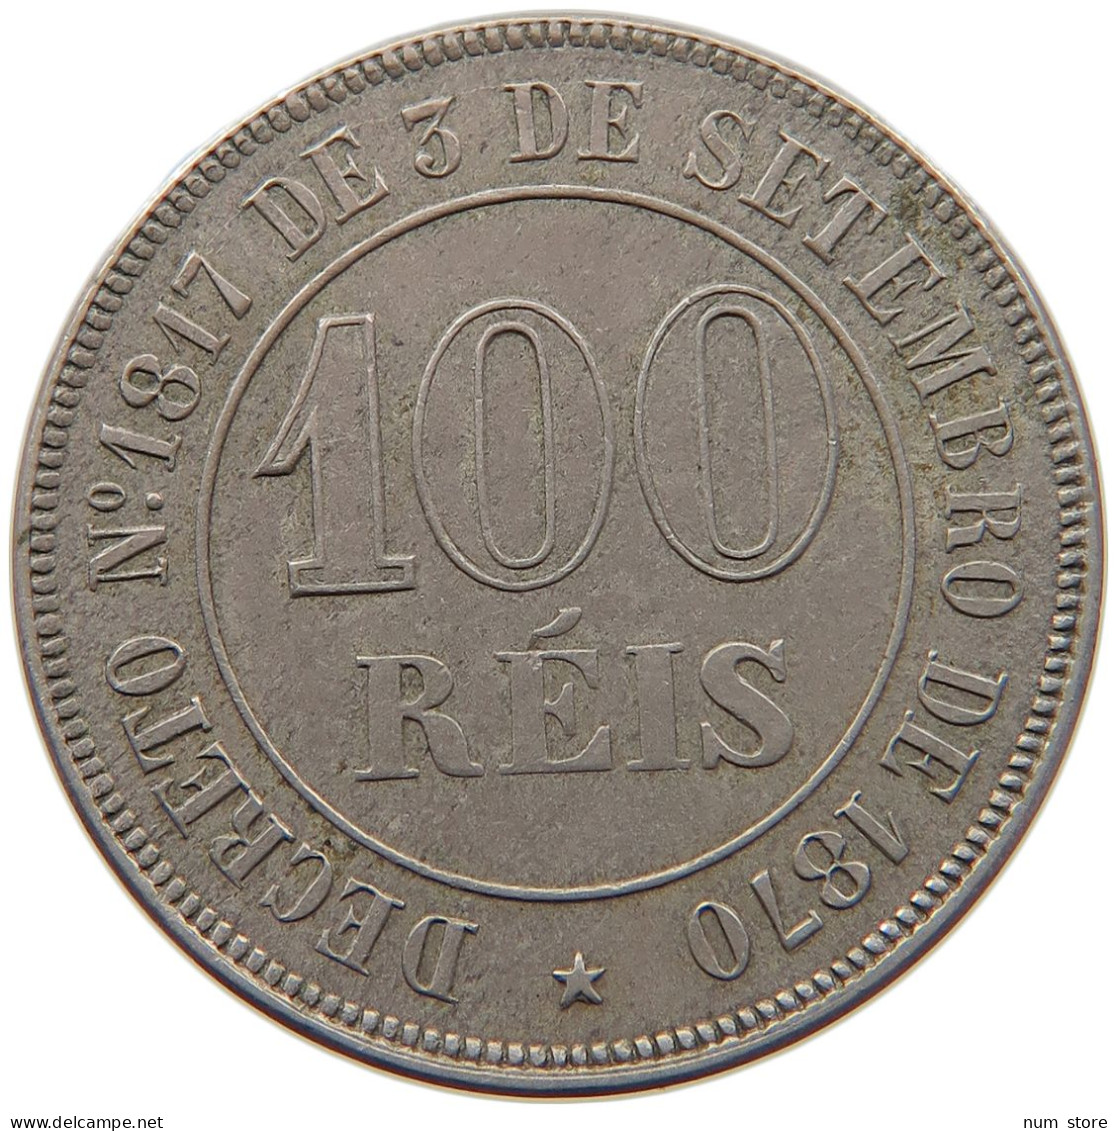 BRAZIL 100 REIS 1871 #s092 0239 - Brazil